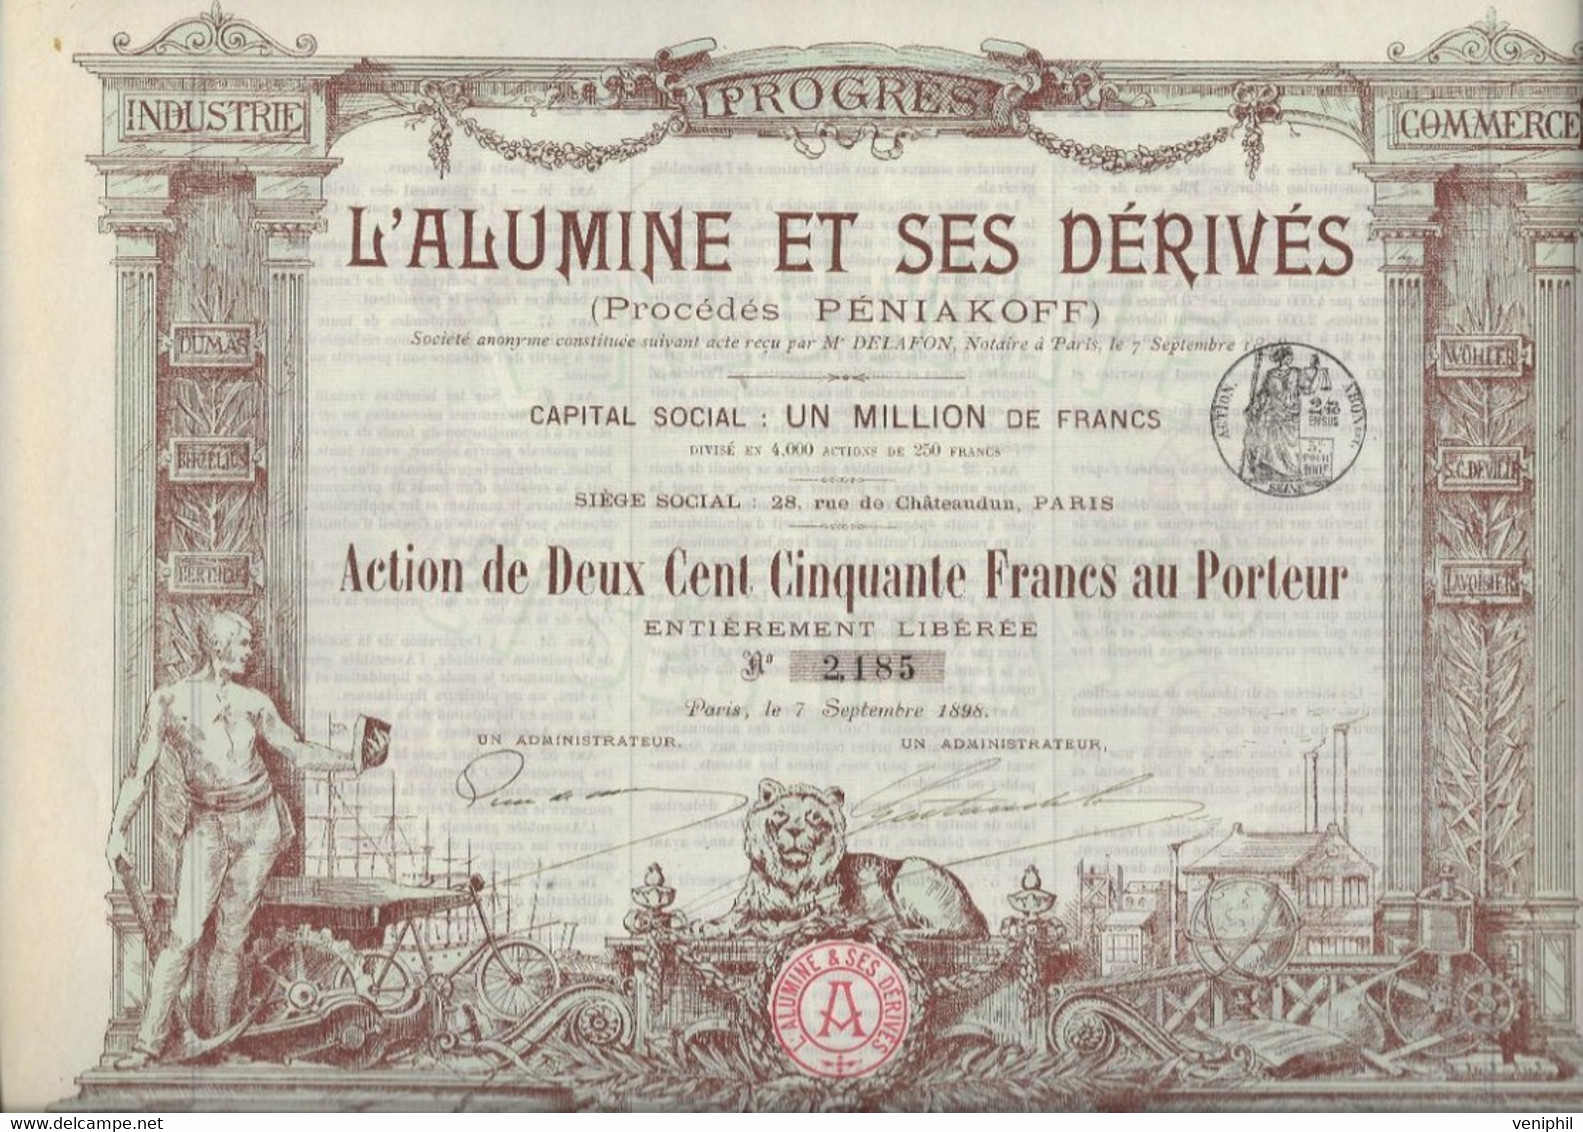 L'ALUMINE ET SES DERIVES -PROCEDE PENIAKOFF - DIVISE EN 4000 ACTIONS DE DEUX CENT CINQUANTE FRANCS -ANNEE 1898 - Bergbau